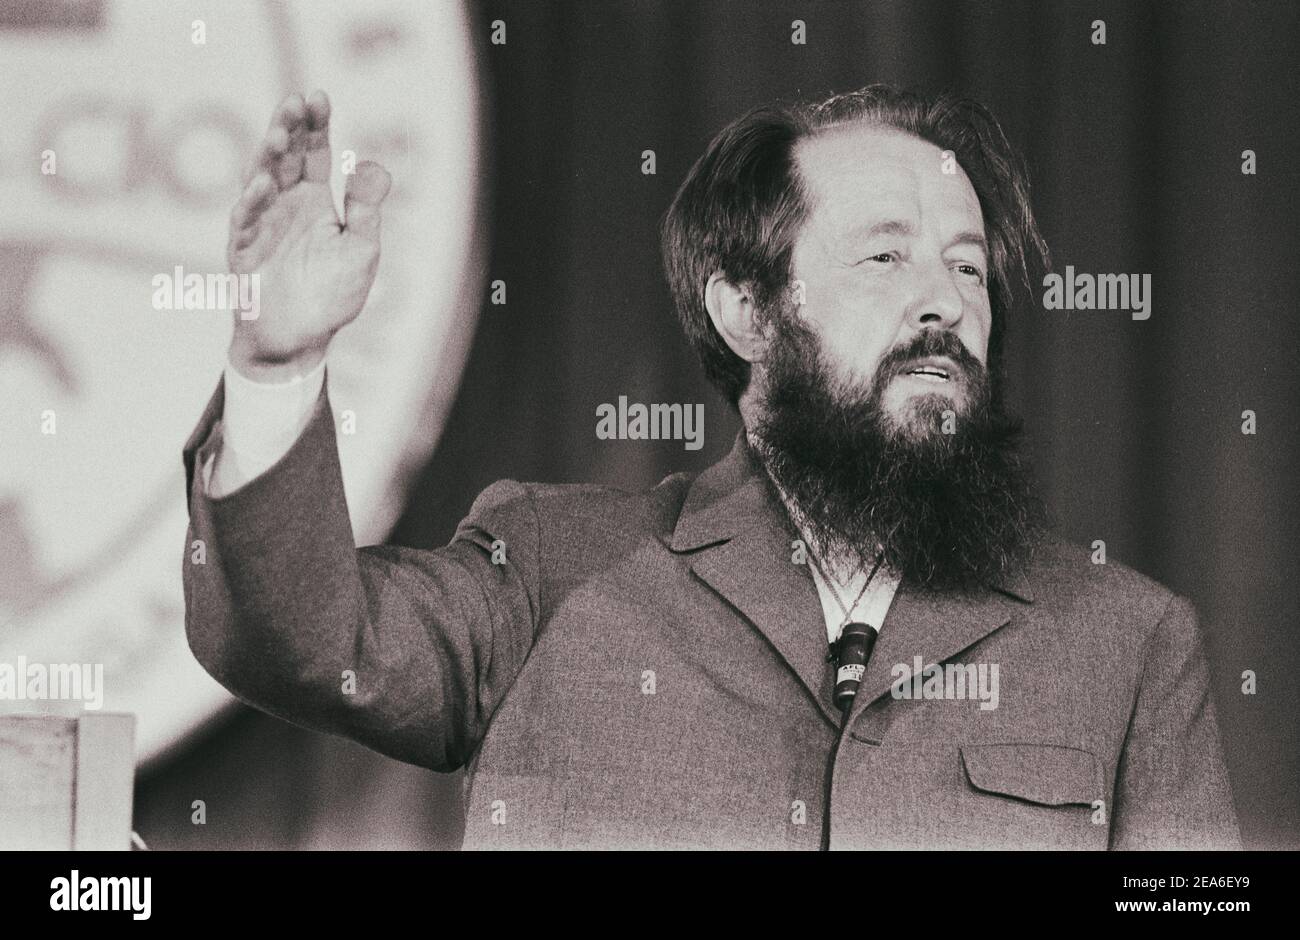 Aleksandr Soljenitsyn, portrait tête-et-épaules, face à face, prenant la parole lors d'une réunion de l'AFL-CIO. ÉTATS-UNIS. Juin 31 1975 Banque D'Images